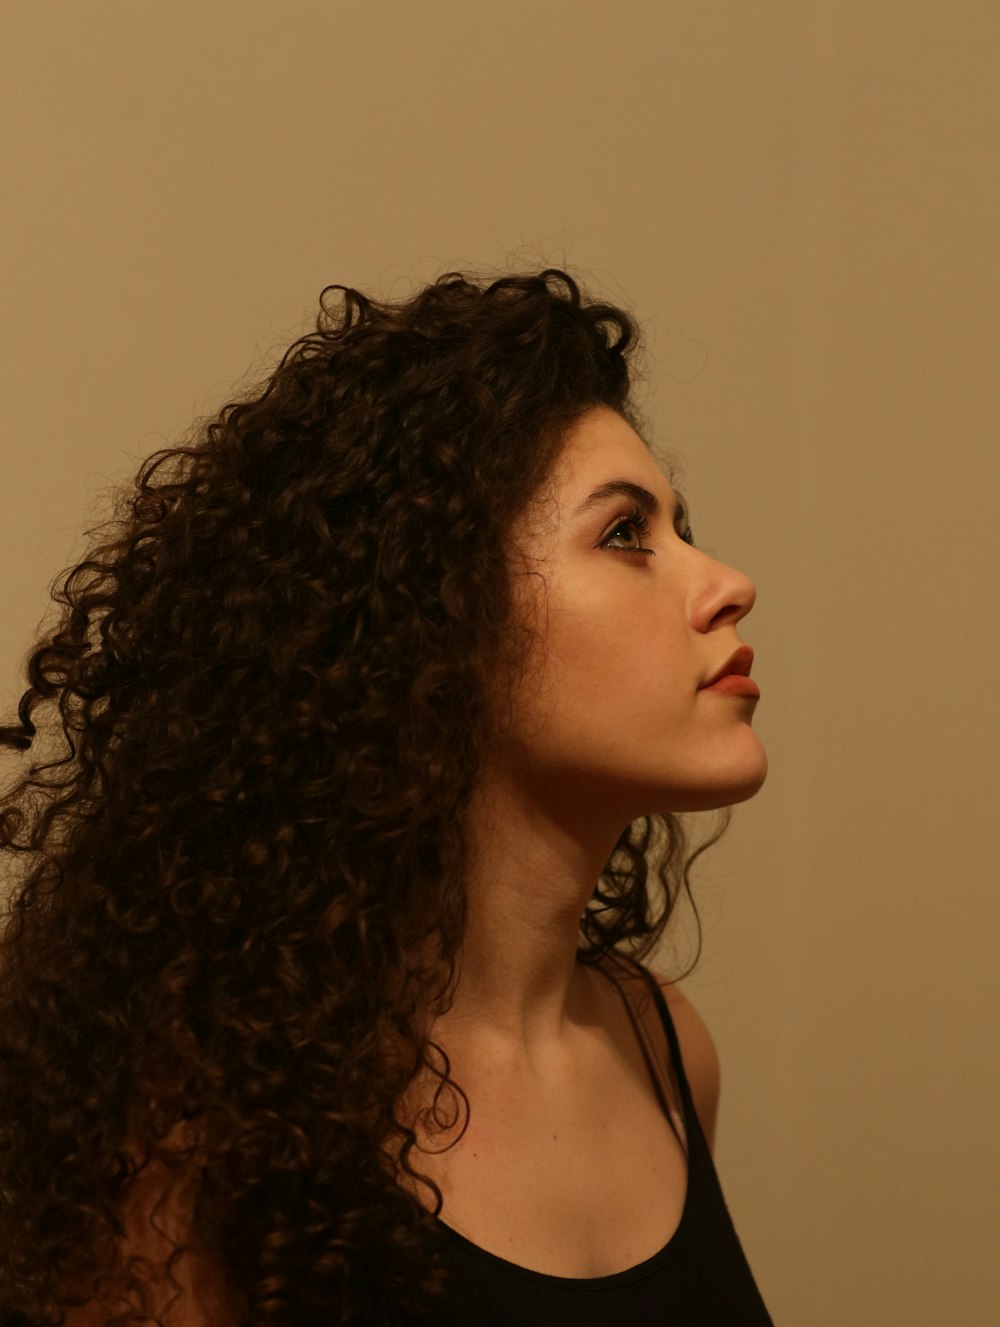 Una mujer con cabello largo y rizado parada frente a una pared